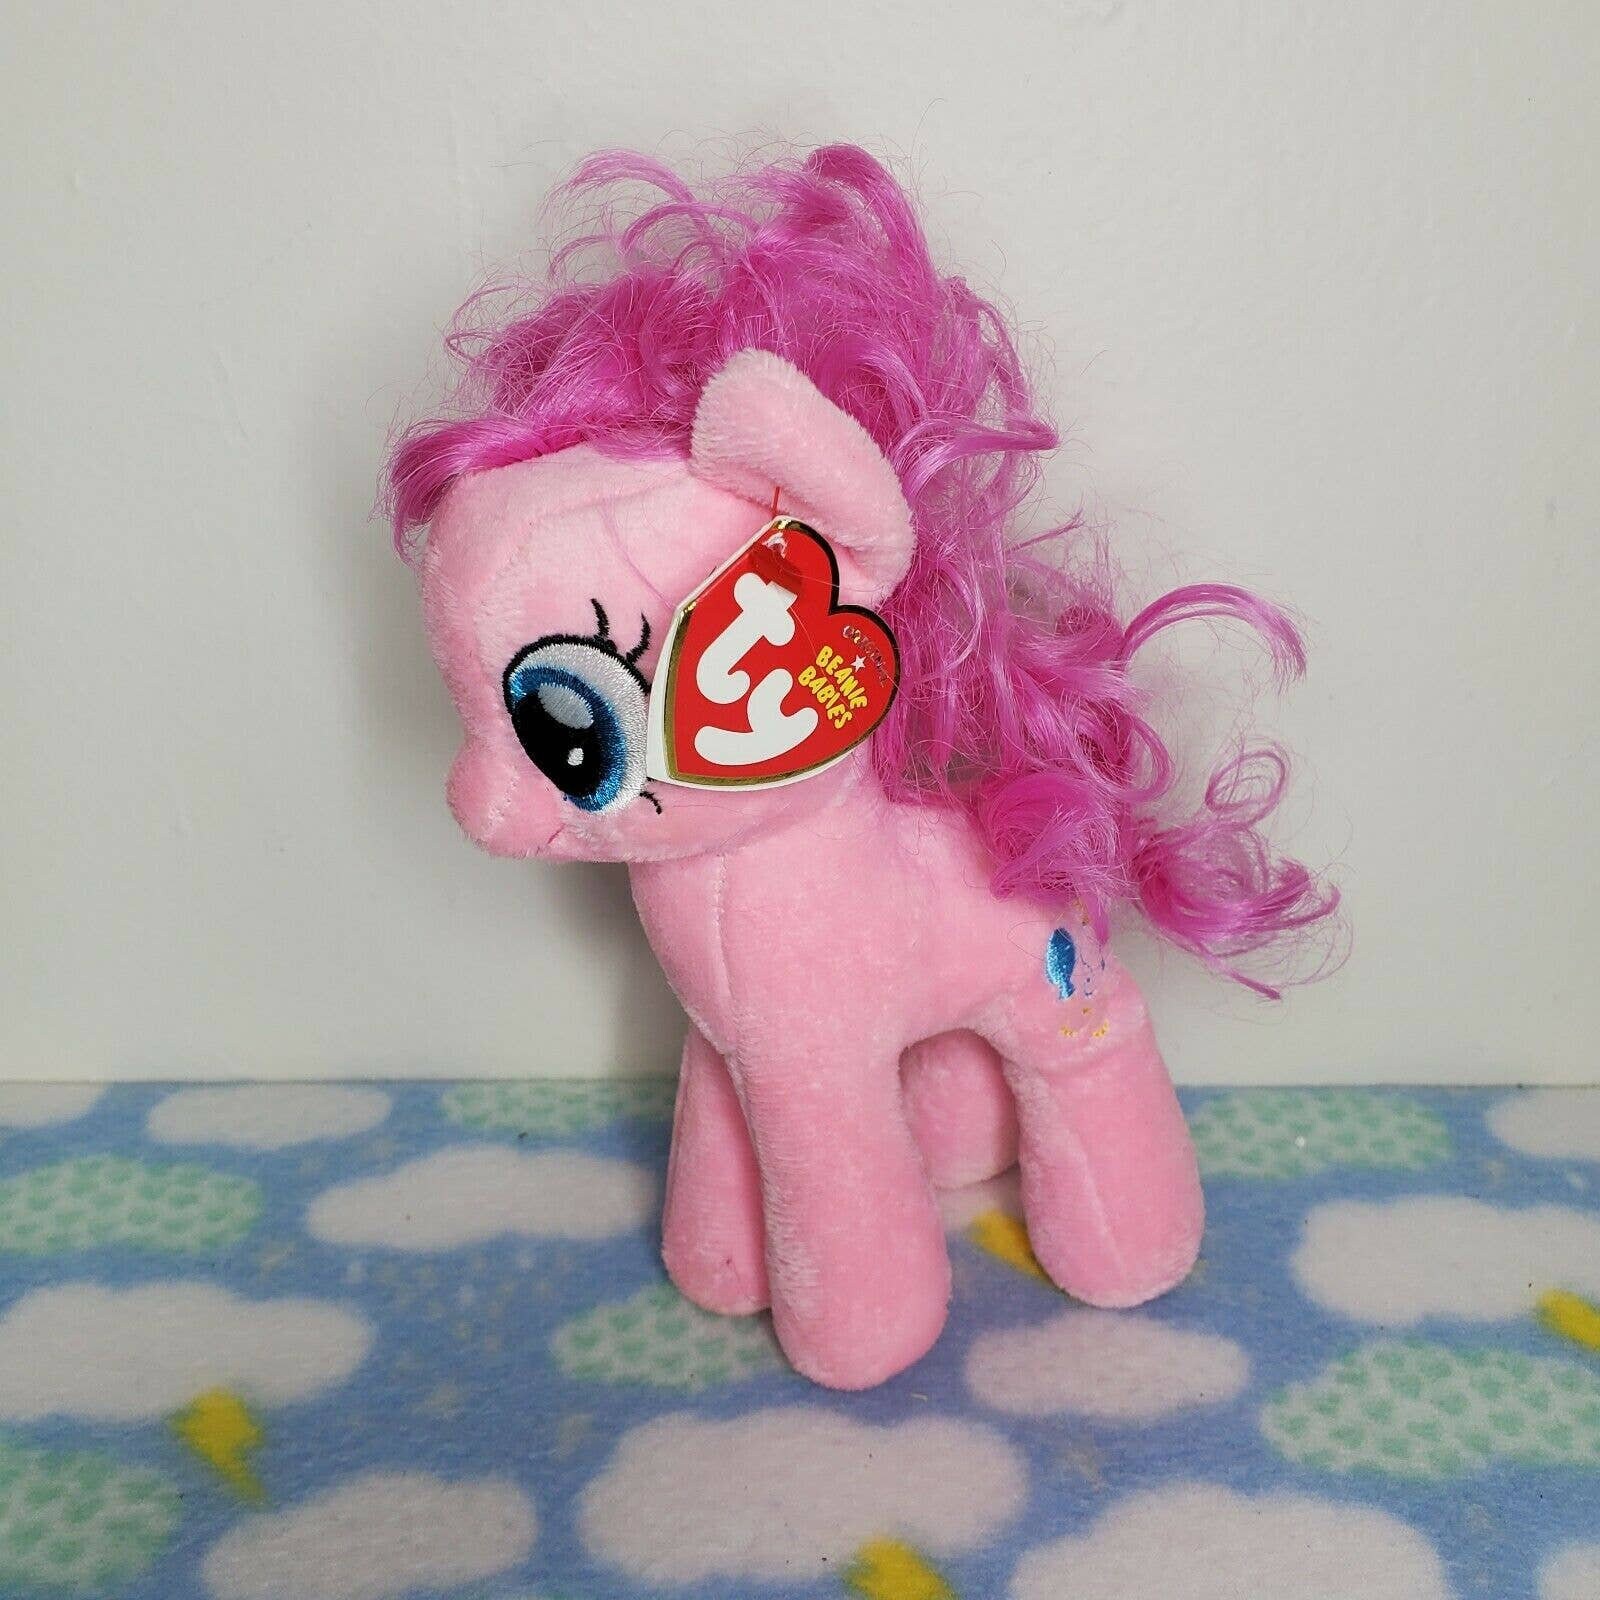 4" TY Beanie Babies My Little Pony Sparkle Pinkie Pie Pendant Plush Stuffed Toys 